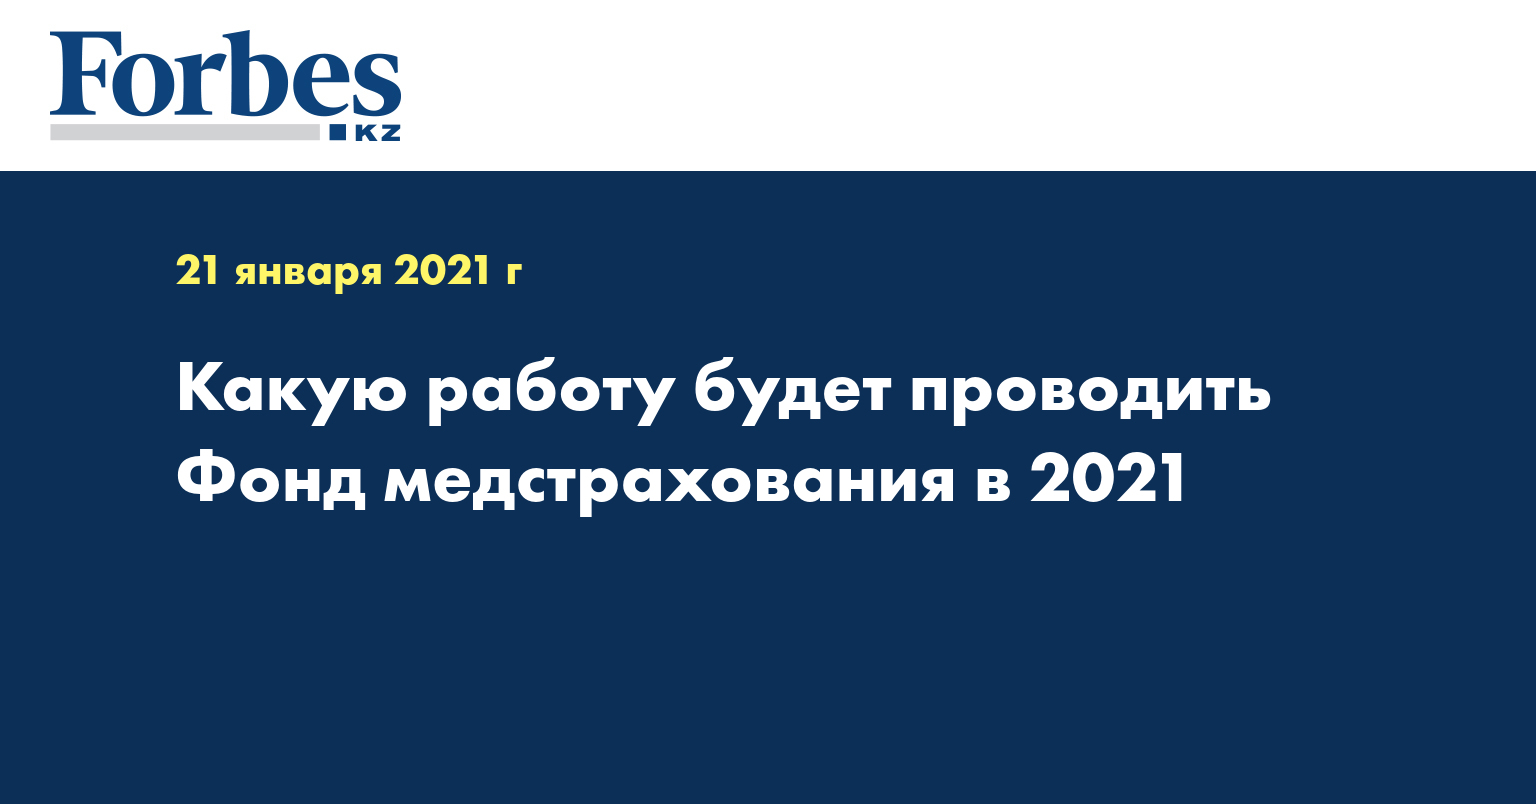 Какую работу будет проводить Фонд медстрахования в 2021